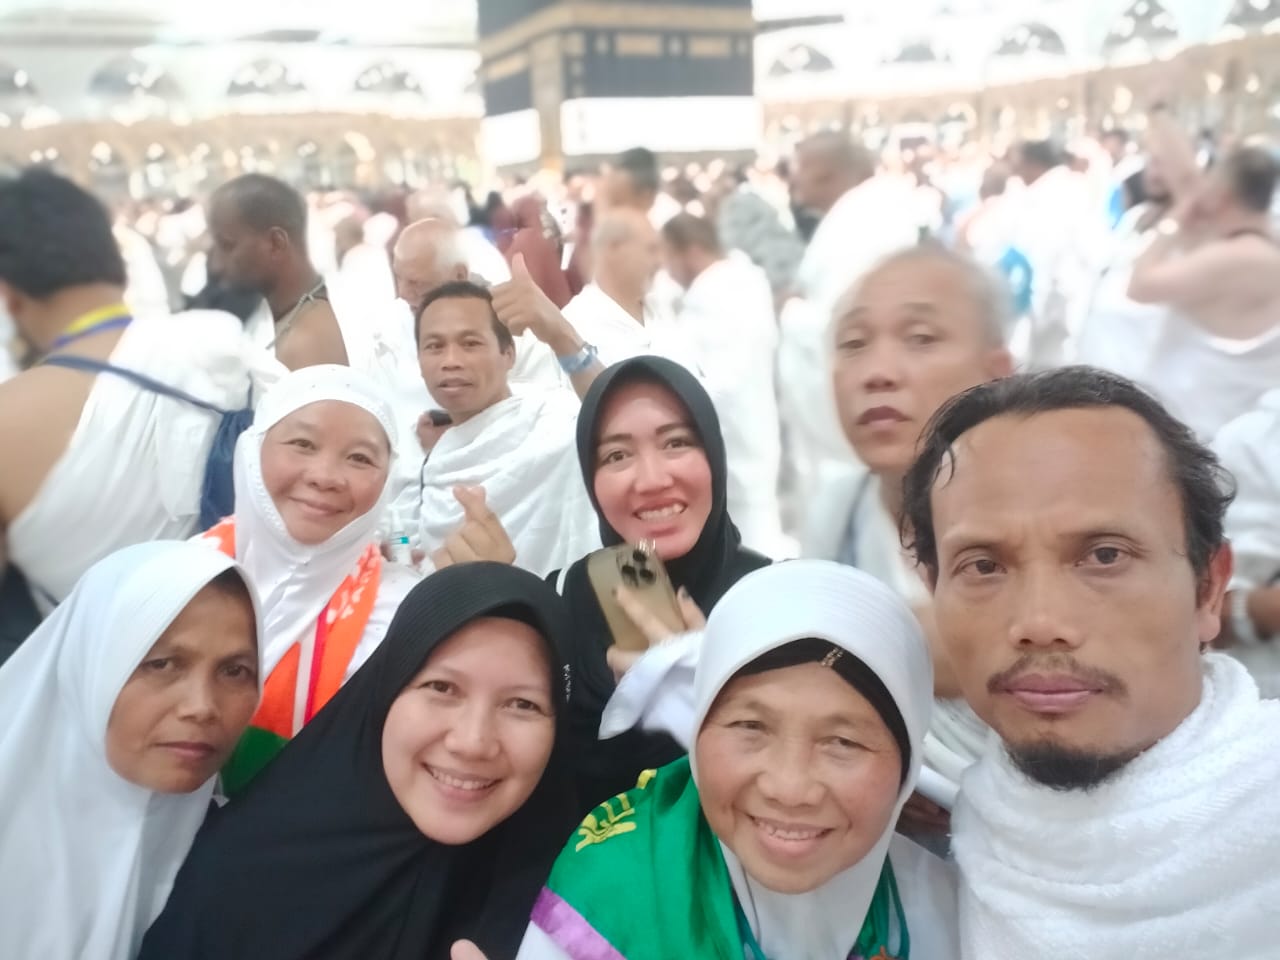 Alhamdulillah, Jemaah Haji Lampung Barat Sehat, Termasuk Jemaah Haji Tertua Berumur 91 Tahun